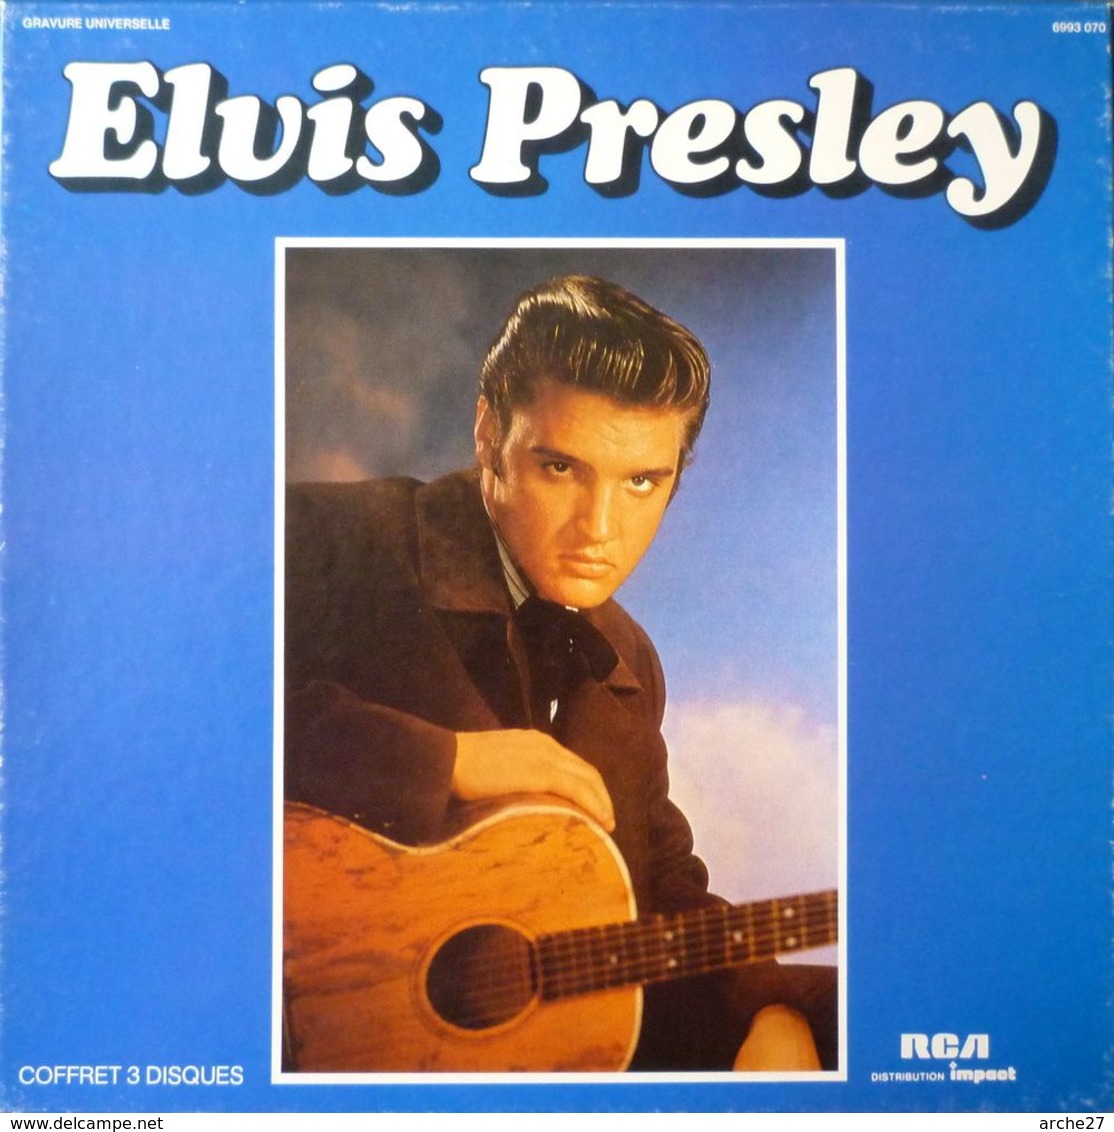 ELVIS PRESLEY - LP - 33T - Disque Vinyle - Coffret 3 Disques - 6993 070 - Rock